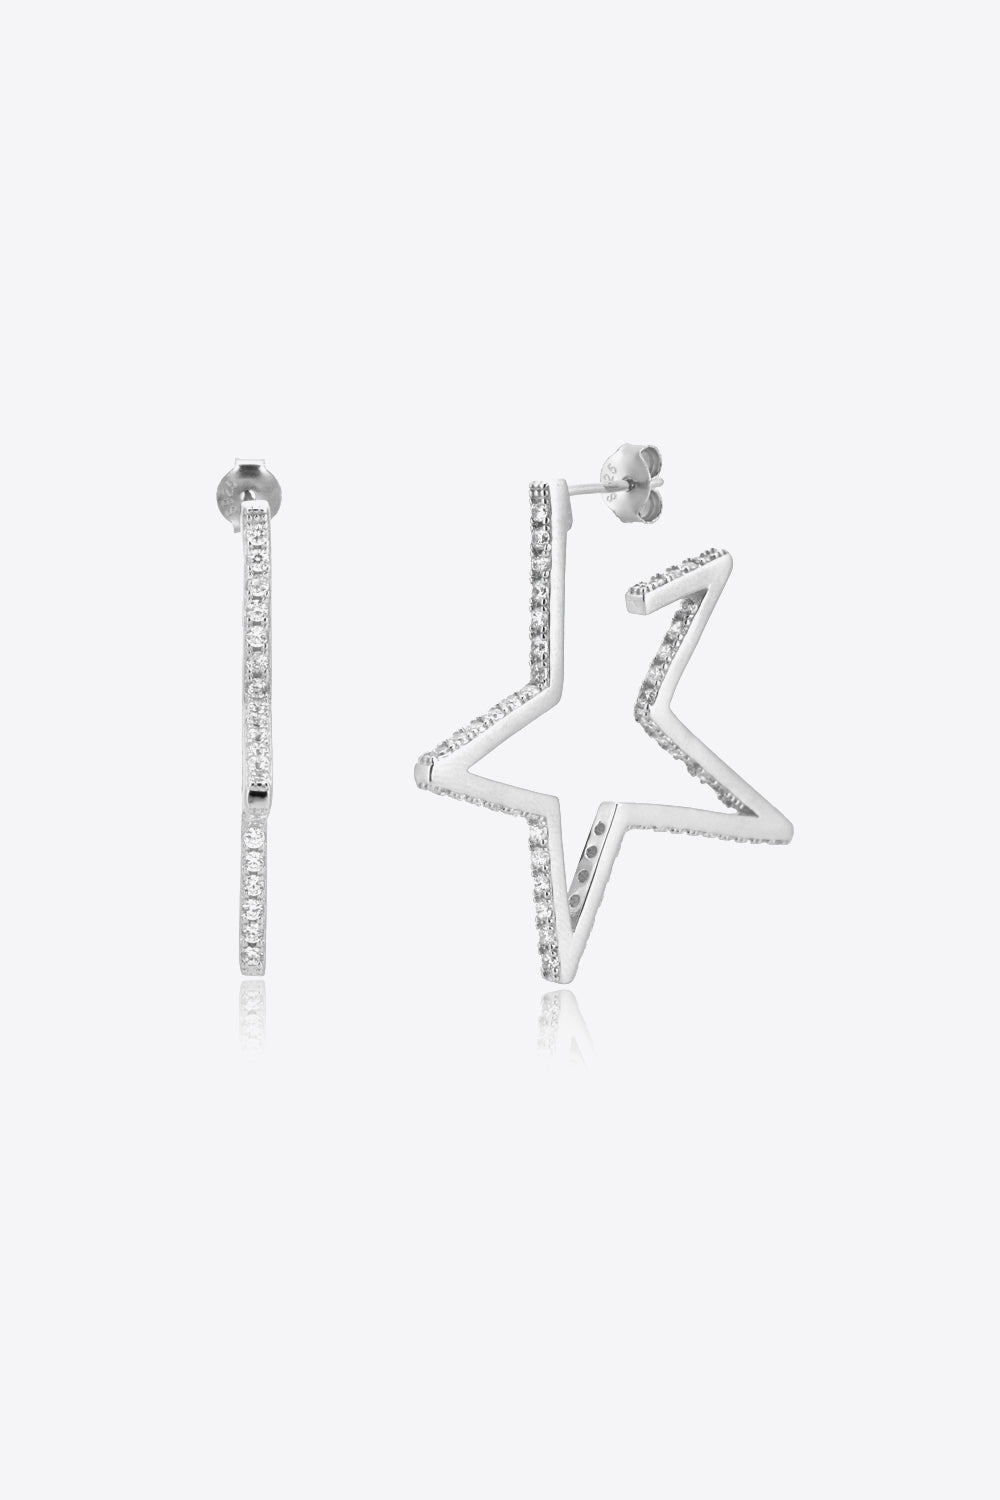 Zircon Star 925 Sterling Silver Earrings - Earrings - FITGGINS